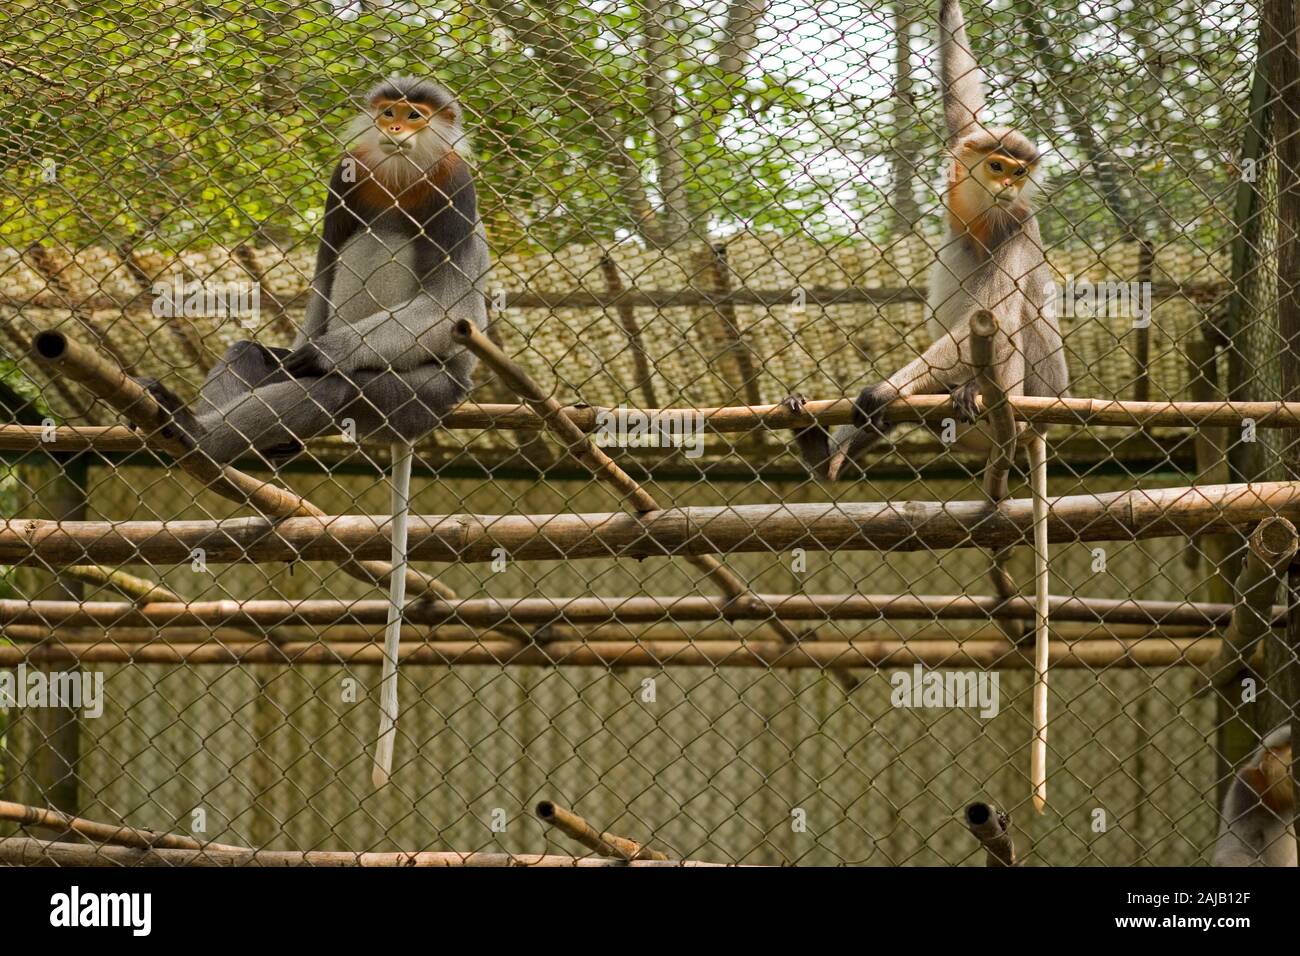 Grau-SHANKED LES MARINES LANGURS cinereus Pygathrix beschlagnahmt geschmuggelten Tiere zusammen für eine Zucht in Gefangenschaft Programm an der Cuc Phuong National gebracht Stockfoto